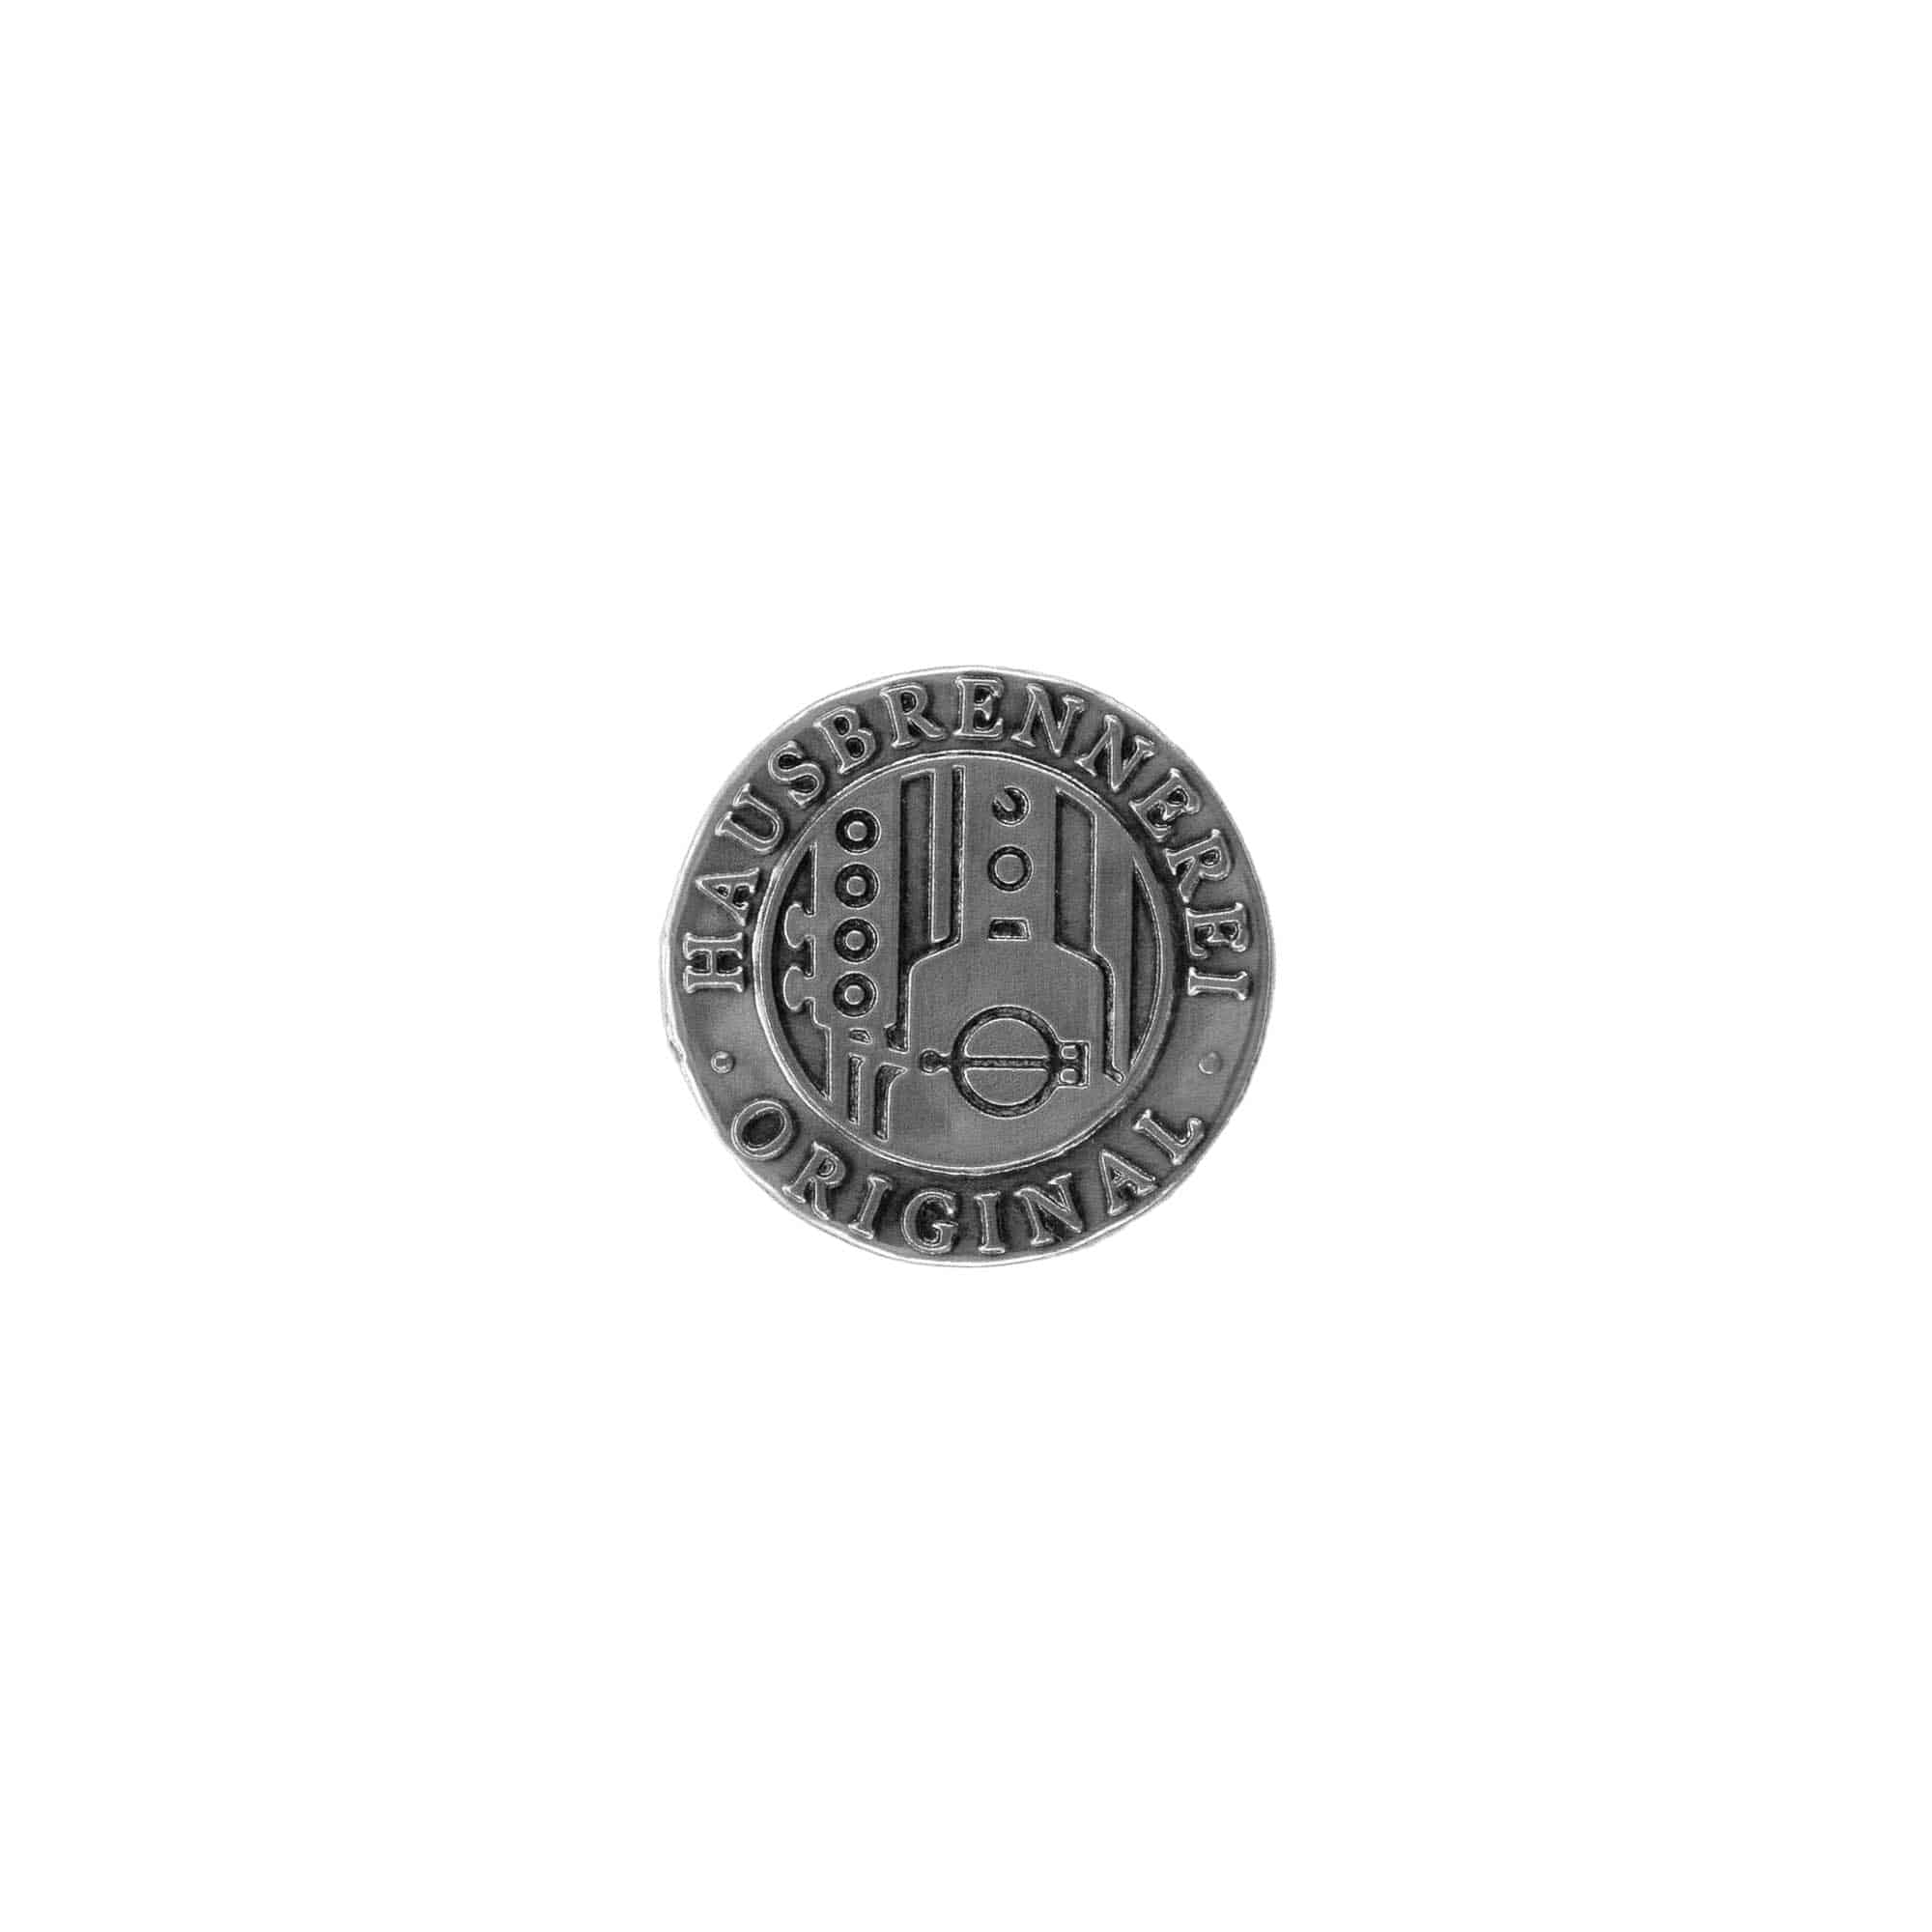 Etykieta cynowa 'Domowa destylarnia', okrągła, metal, kolor srebrny